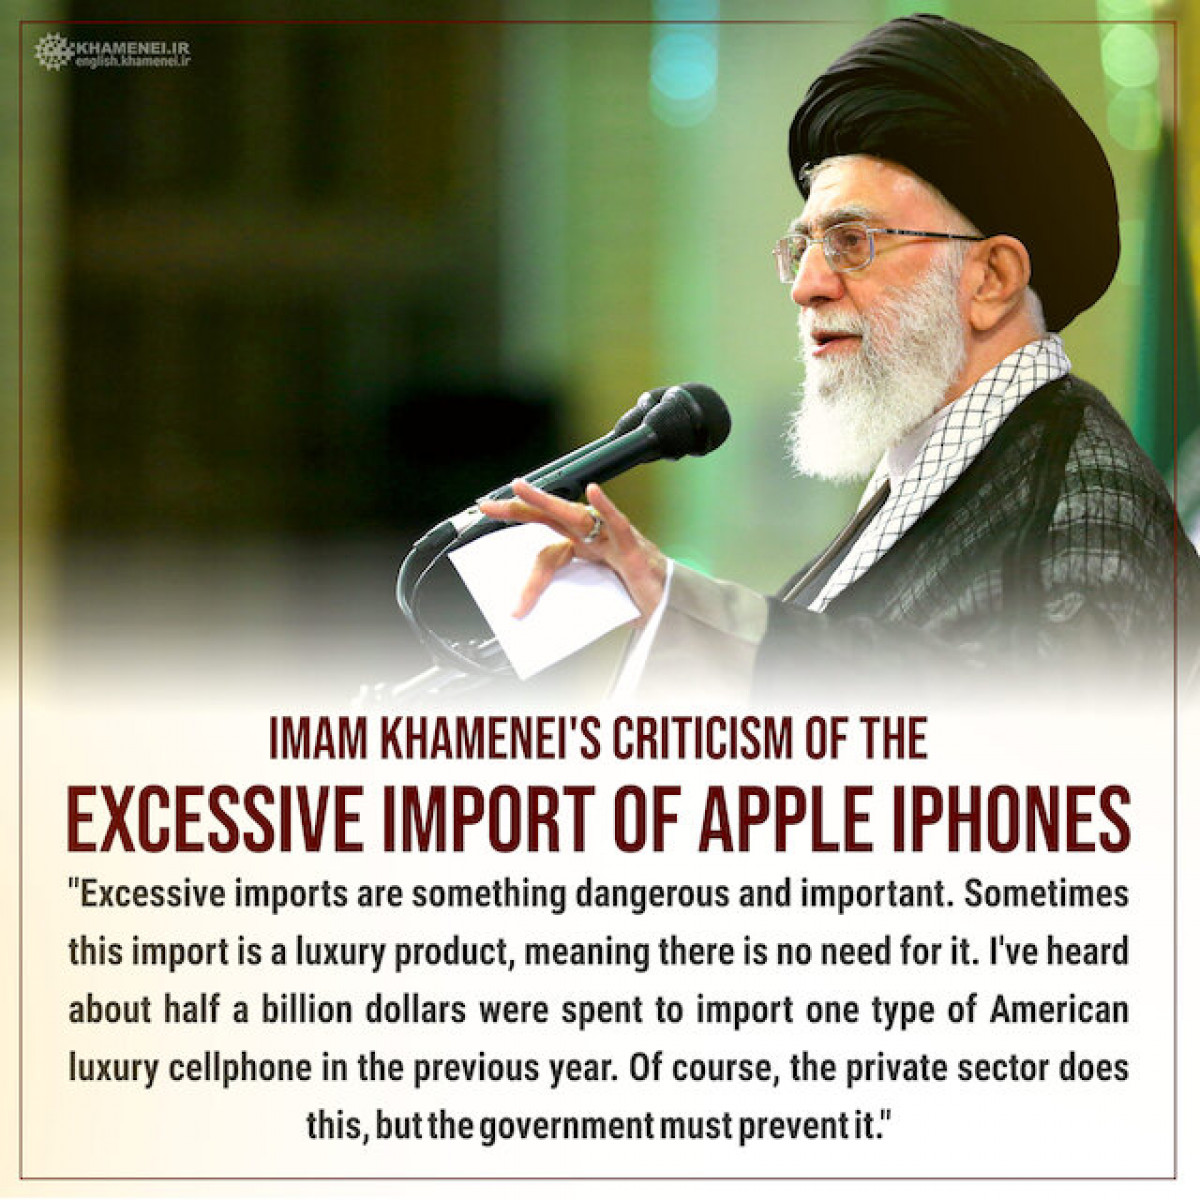 Imam Khamenei's criticism of the excessive import of Apple iPhones